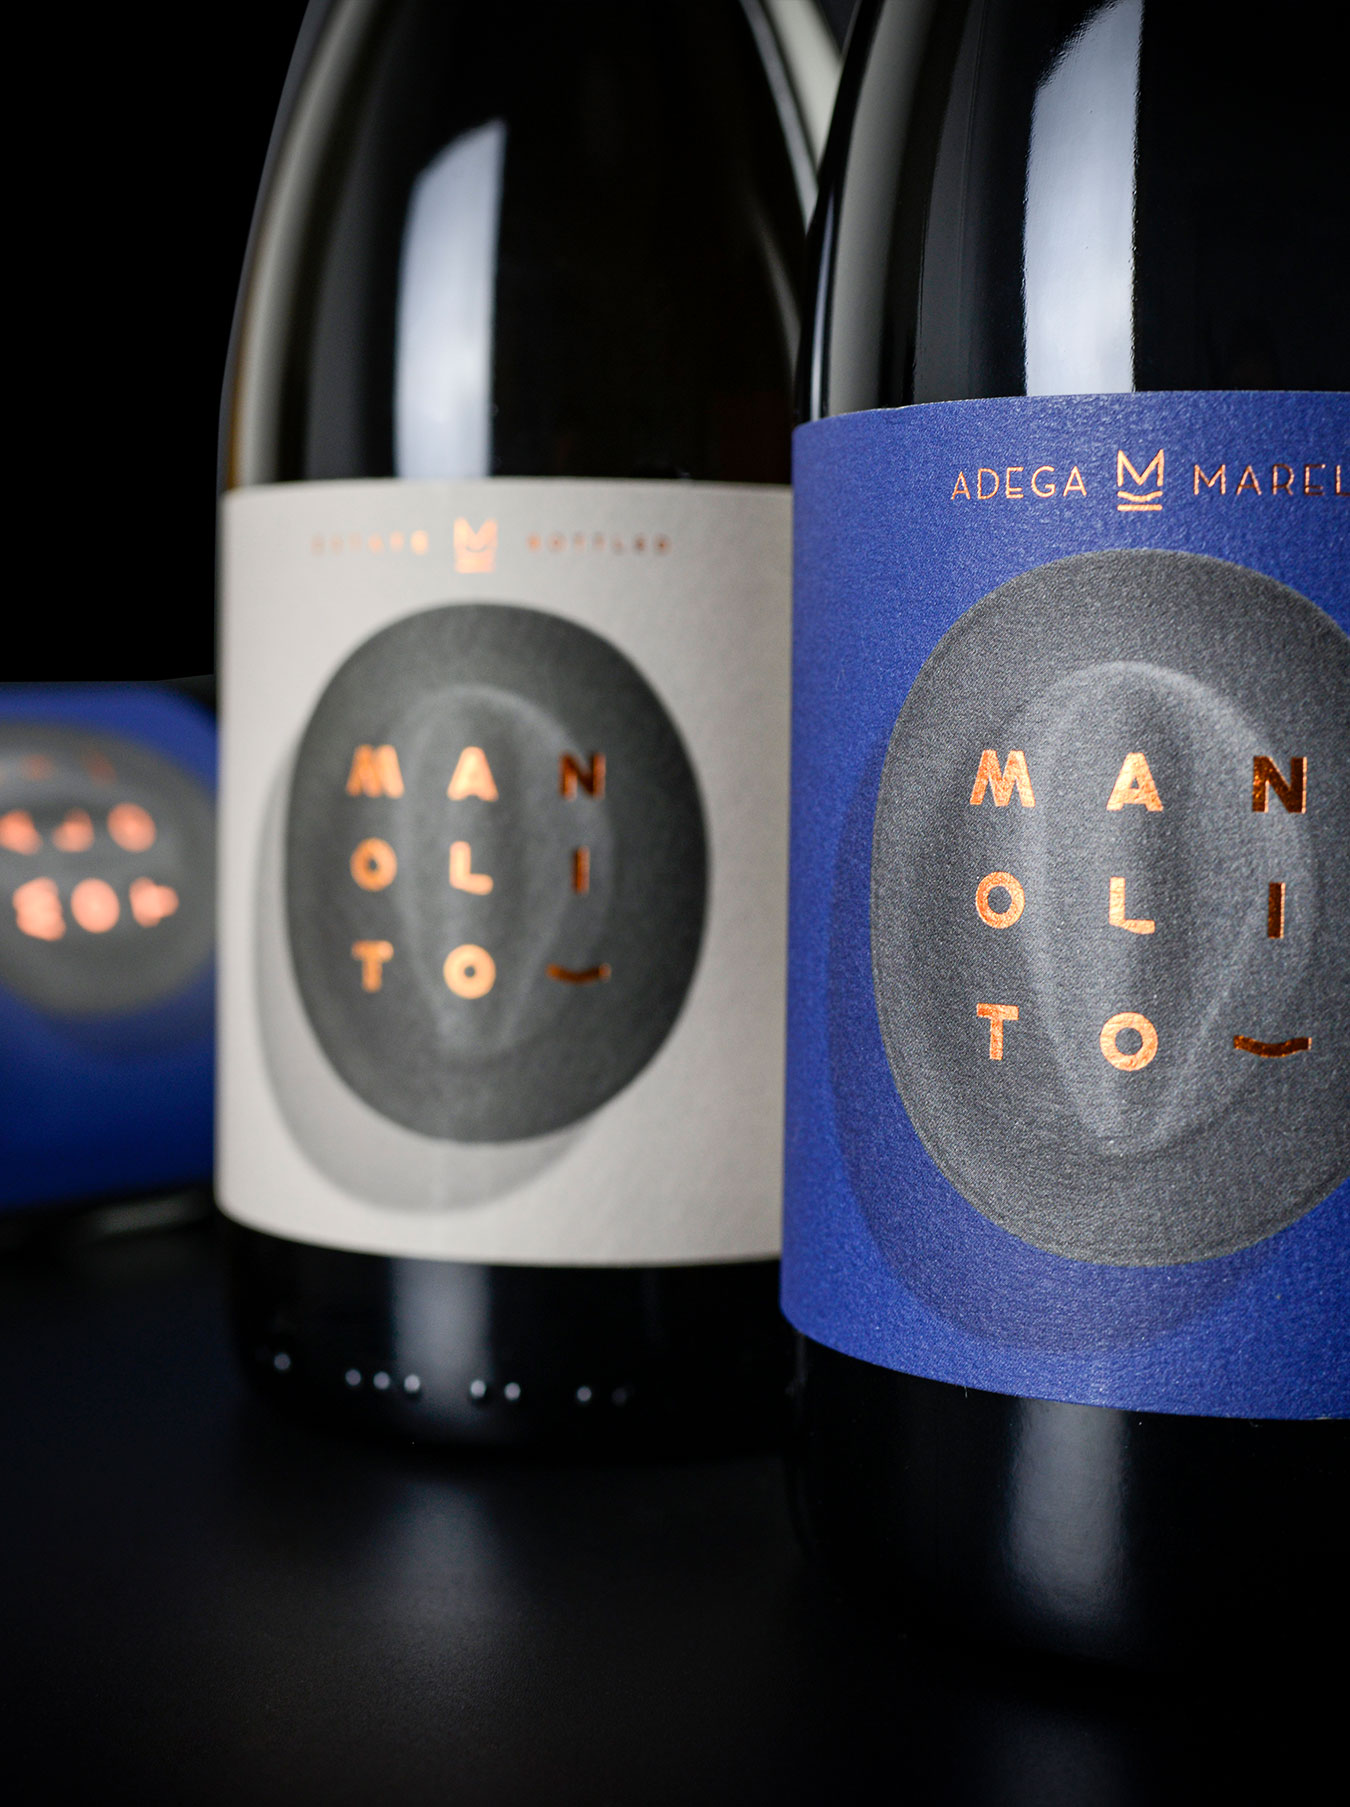 Três garrafas de vinho Manolito da Adega Marel: duas de vinho tinto e uma de vinho branco. Os rótulos são azuis no tinto e creme no branco, com imagens de chapéus fedora aveludados.